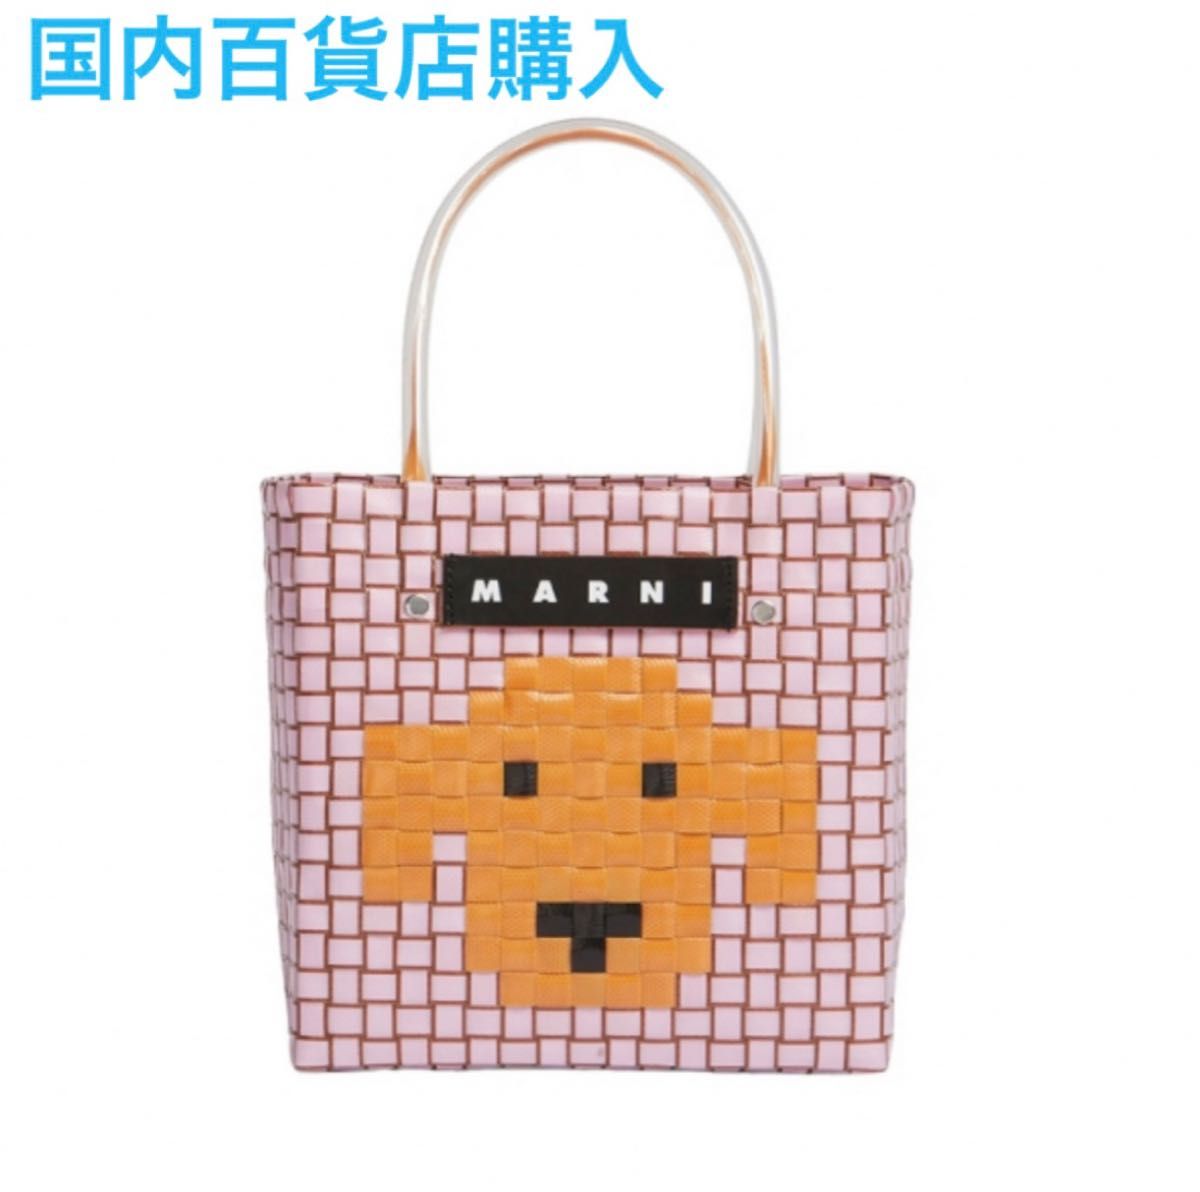 新品 マルニ Marni アニマルバスケット ピンク ドッグ 犬 バッグ かばん カゴバッグ かごバッグ マルニマーケット